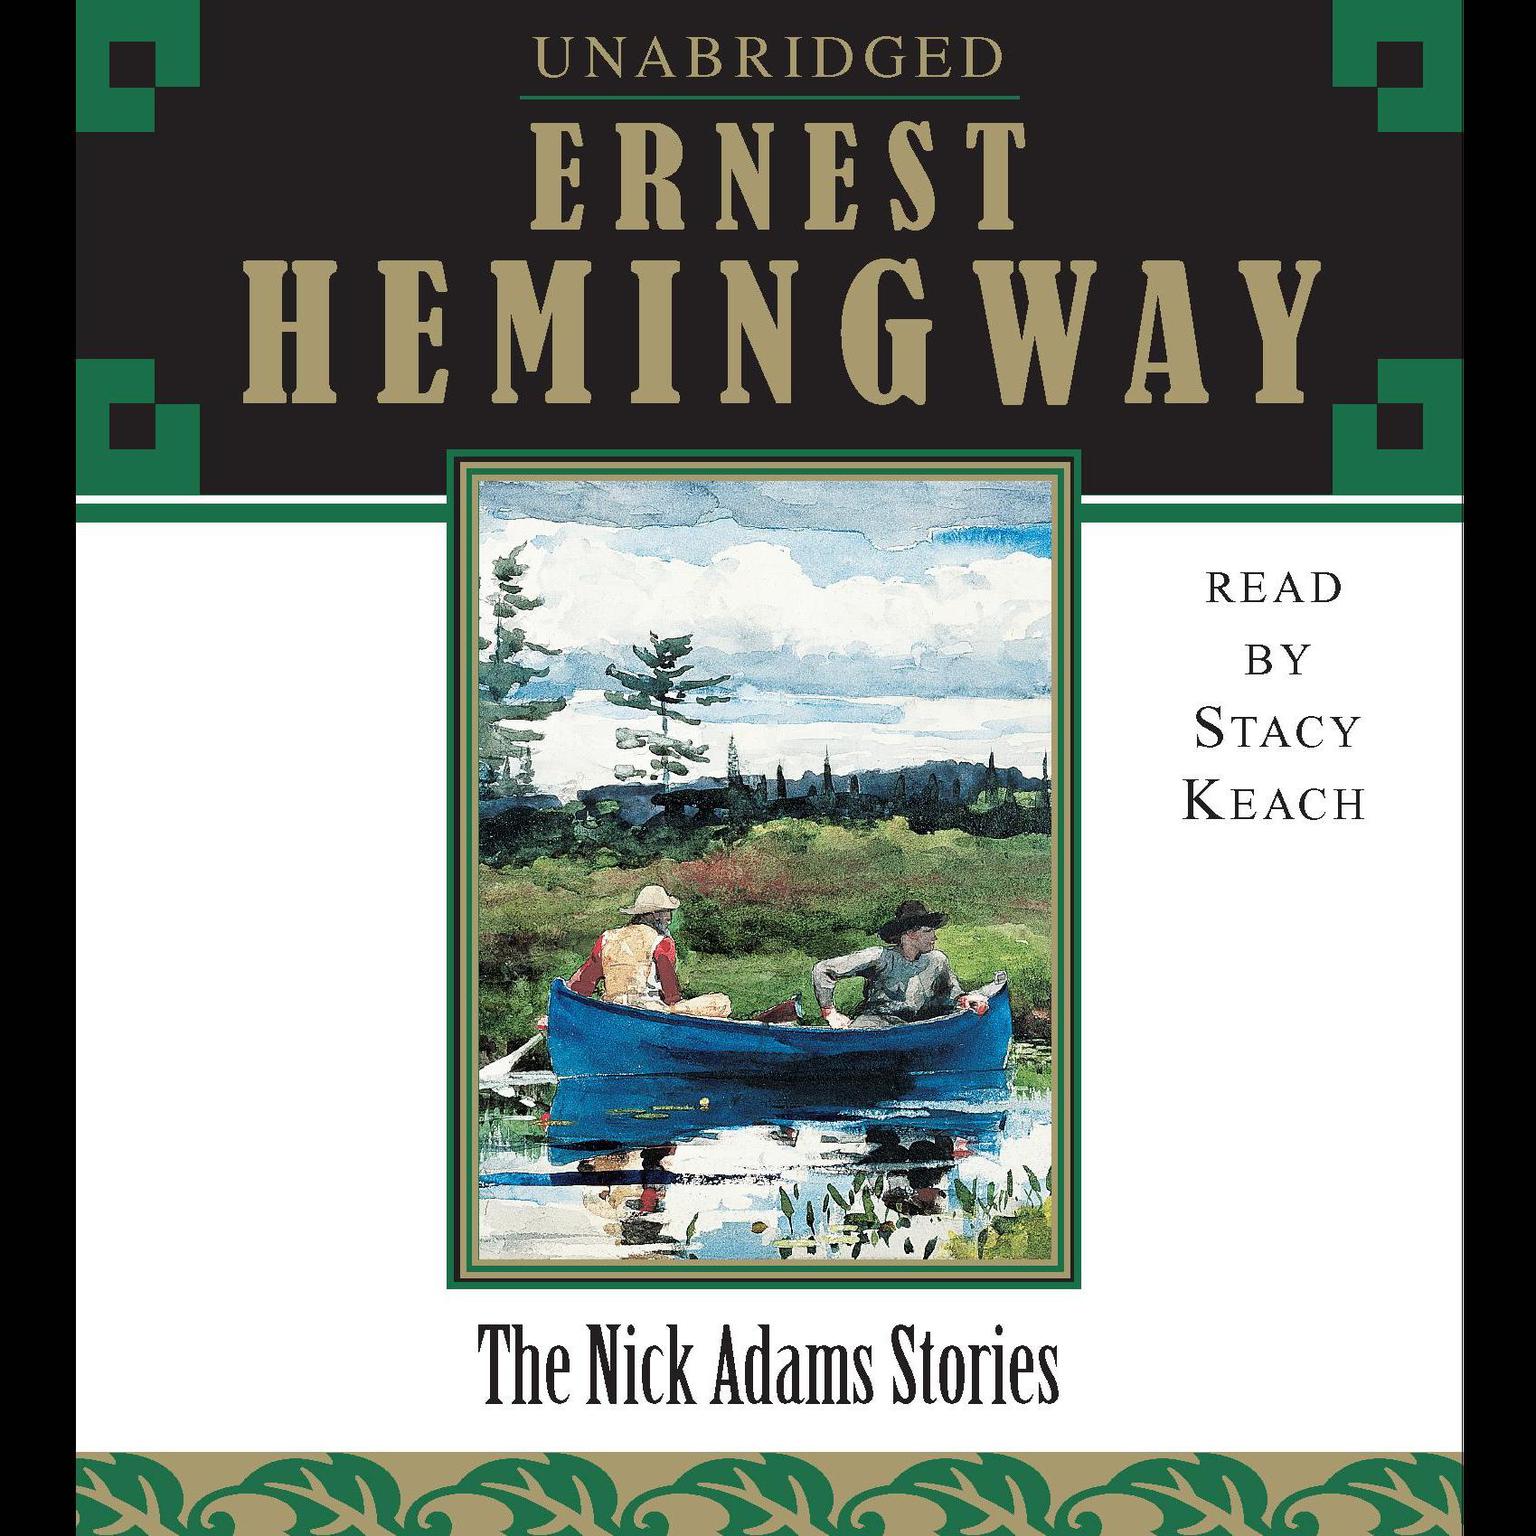 The Nick Adams Stories Audiobook, by Ernest Hemingway